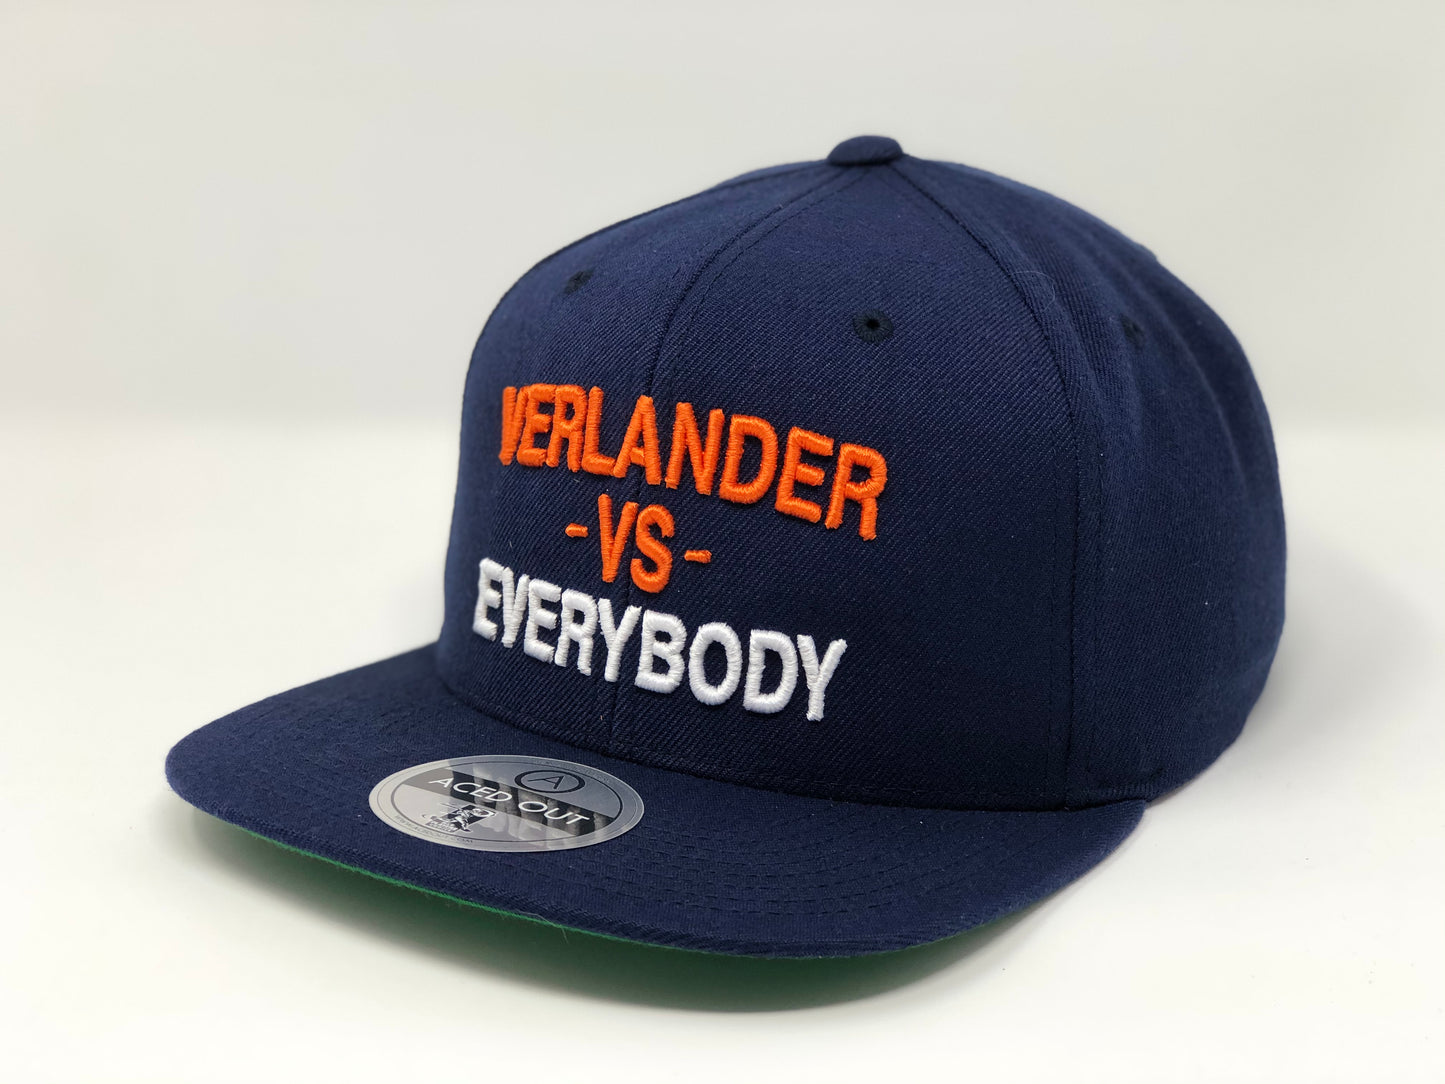 Justin Verlander vs EVERYBODY Hat - Navy Snapback